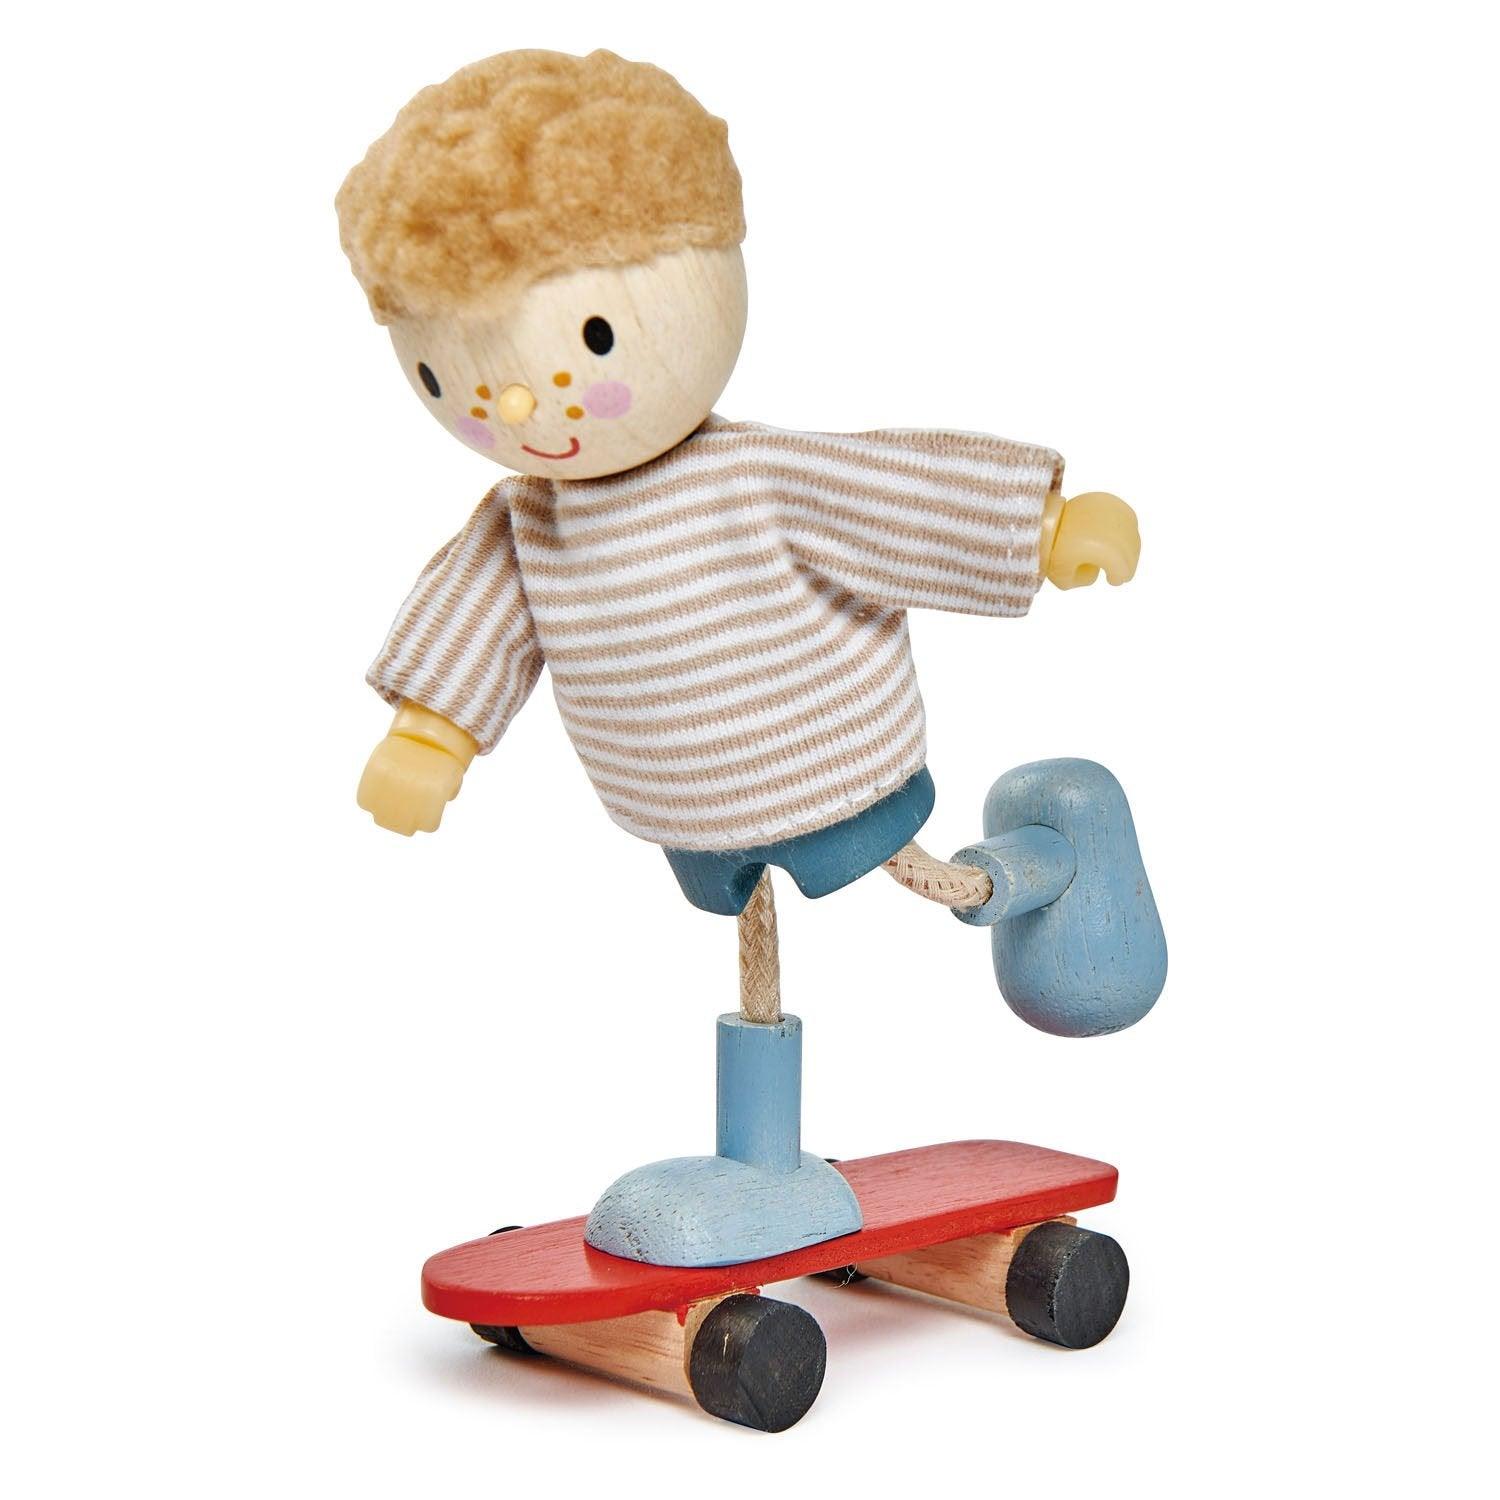 Tender Leaf Toys: Edward doll on a skateboard